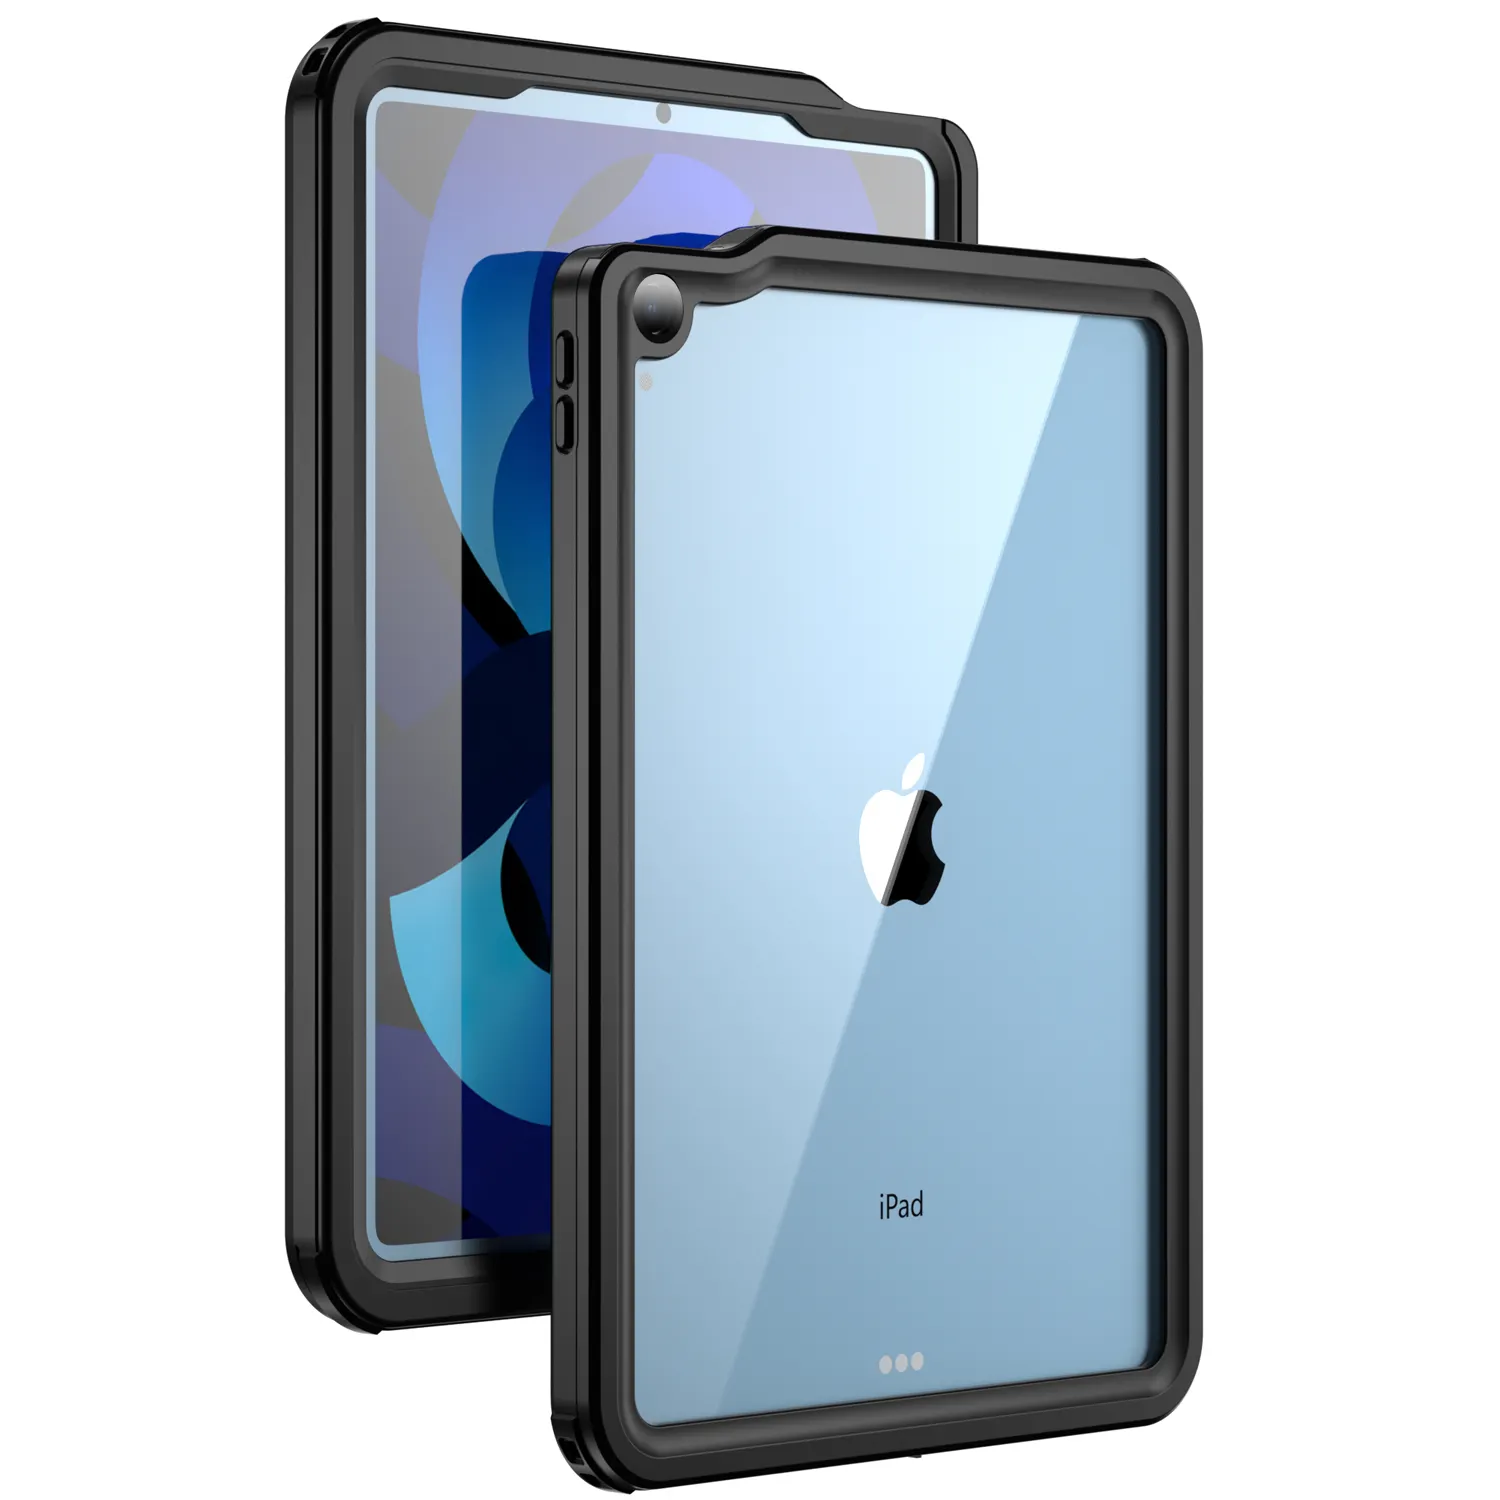 Casing tablet tahan Air IP68, casing tablet untuk Ipad Air 5 10.9 inci